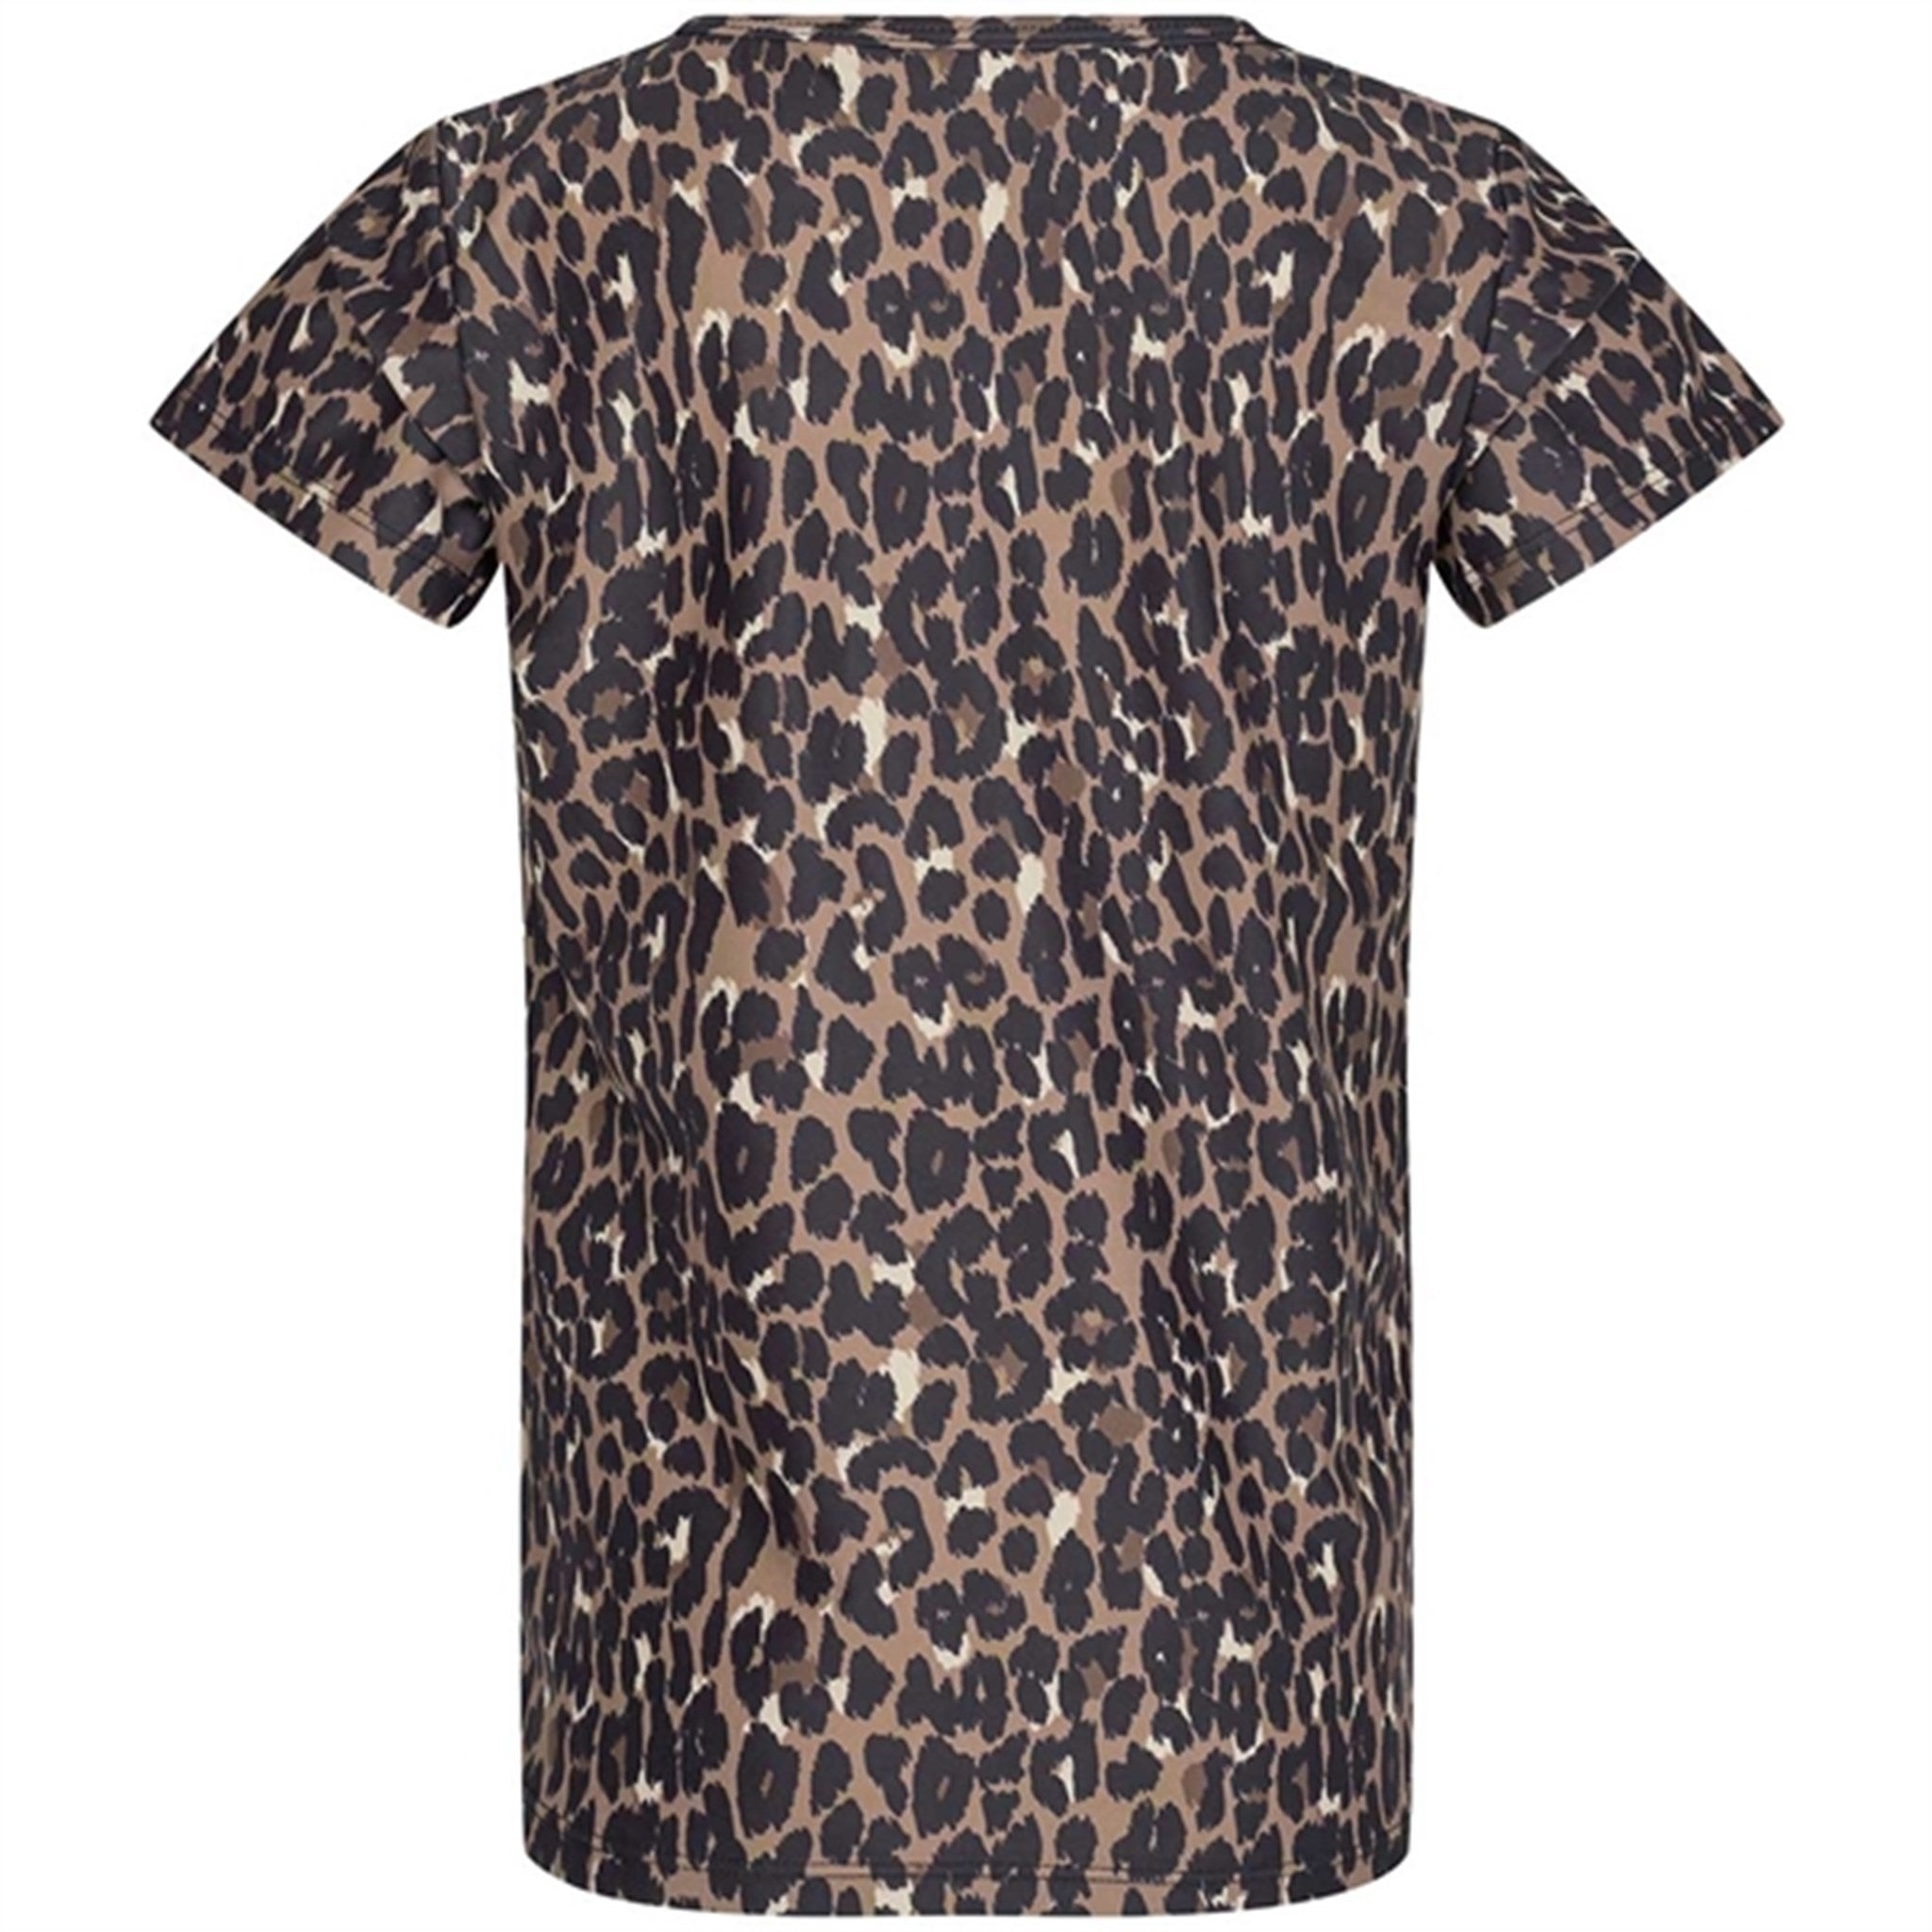 Sofie Schnoor Young Leopard Louisa T-shirt 5